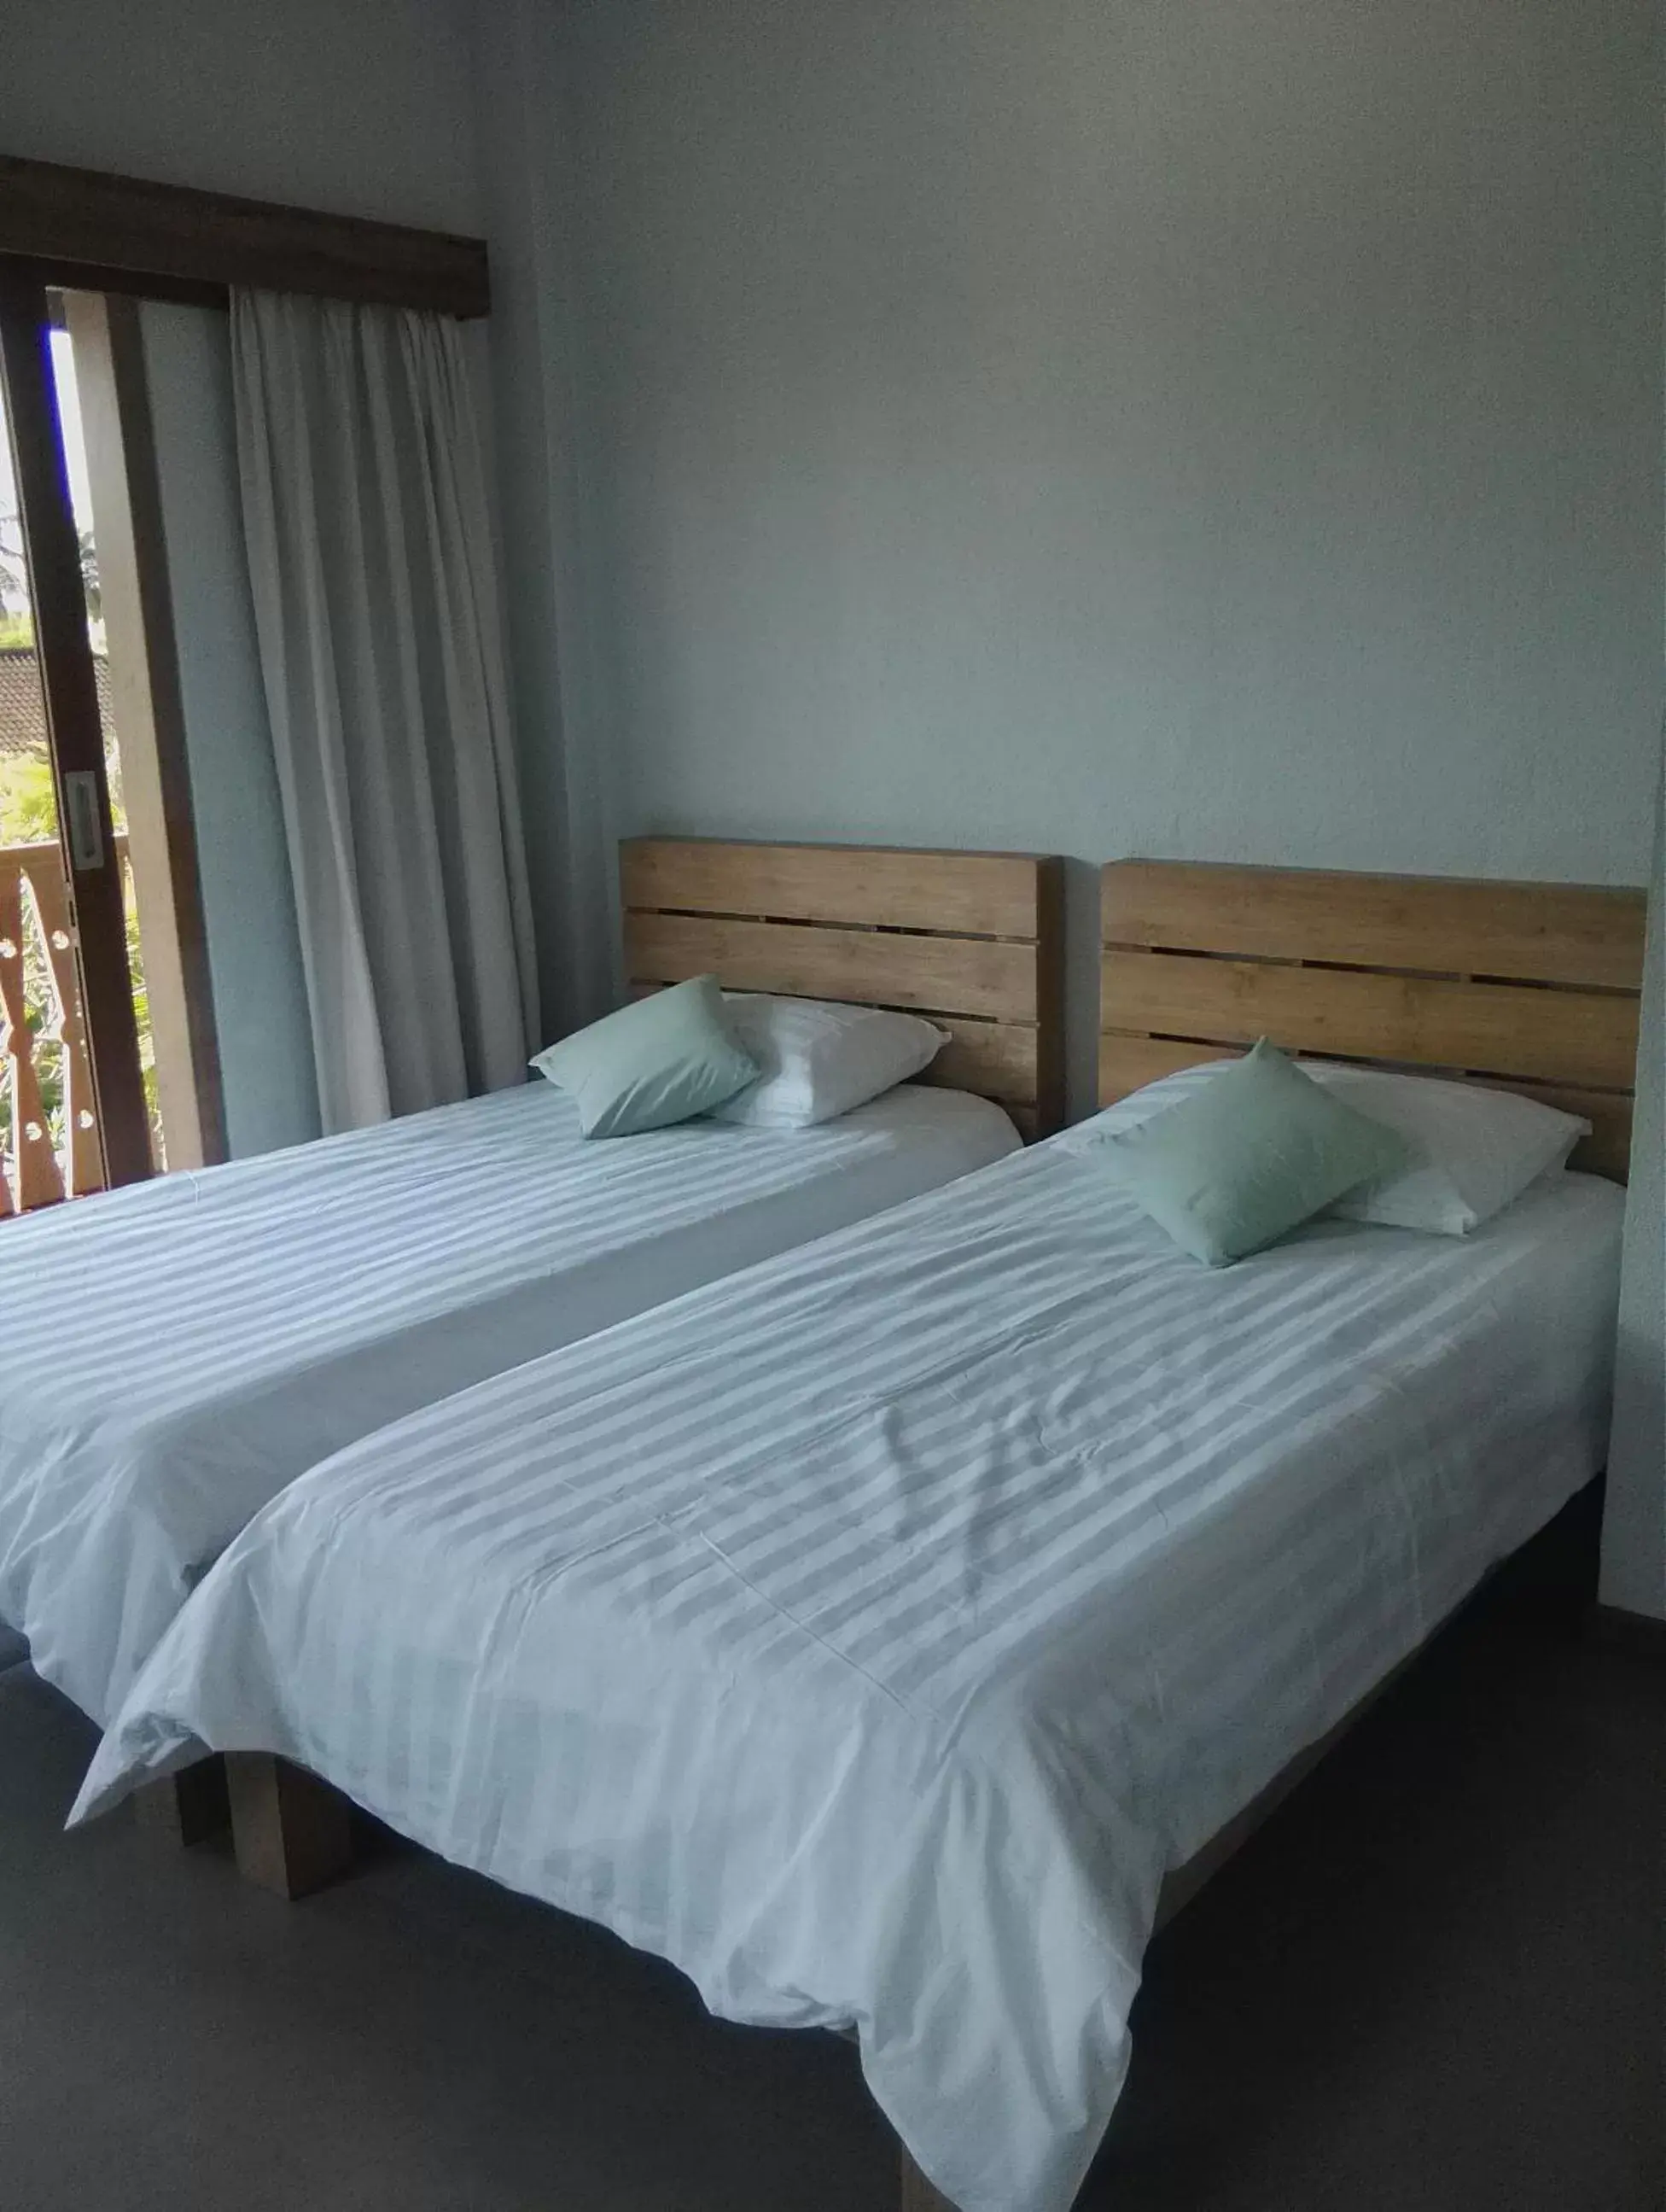 Bed, Room Photo in Ju'Blu Hotel